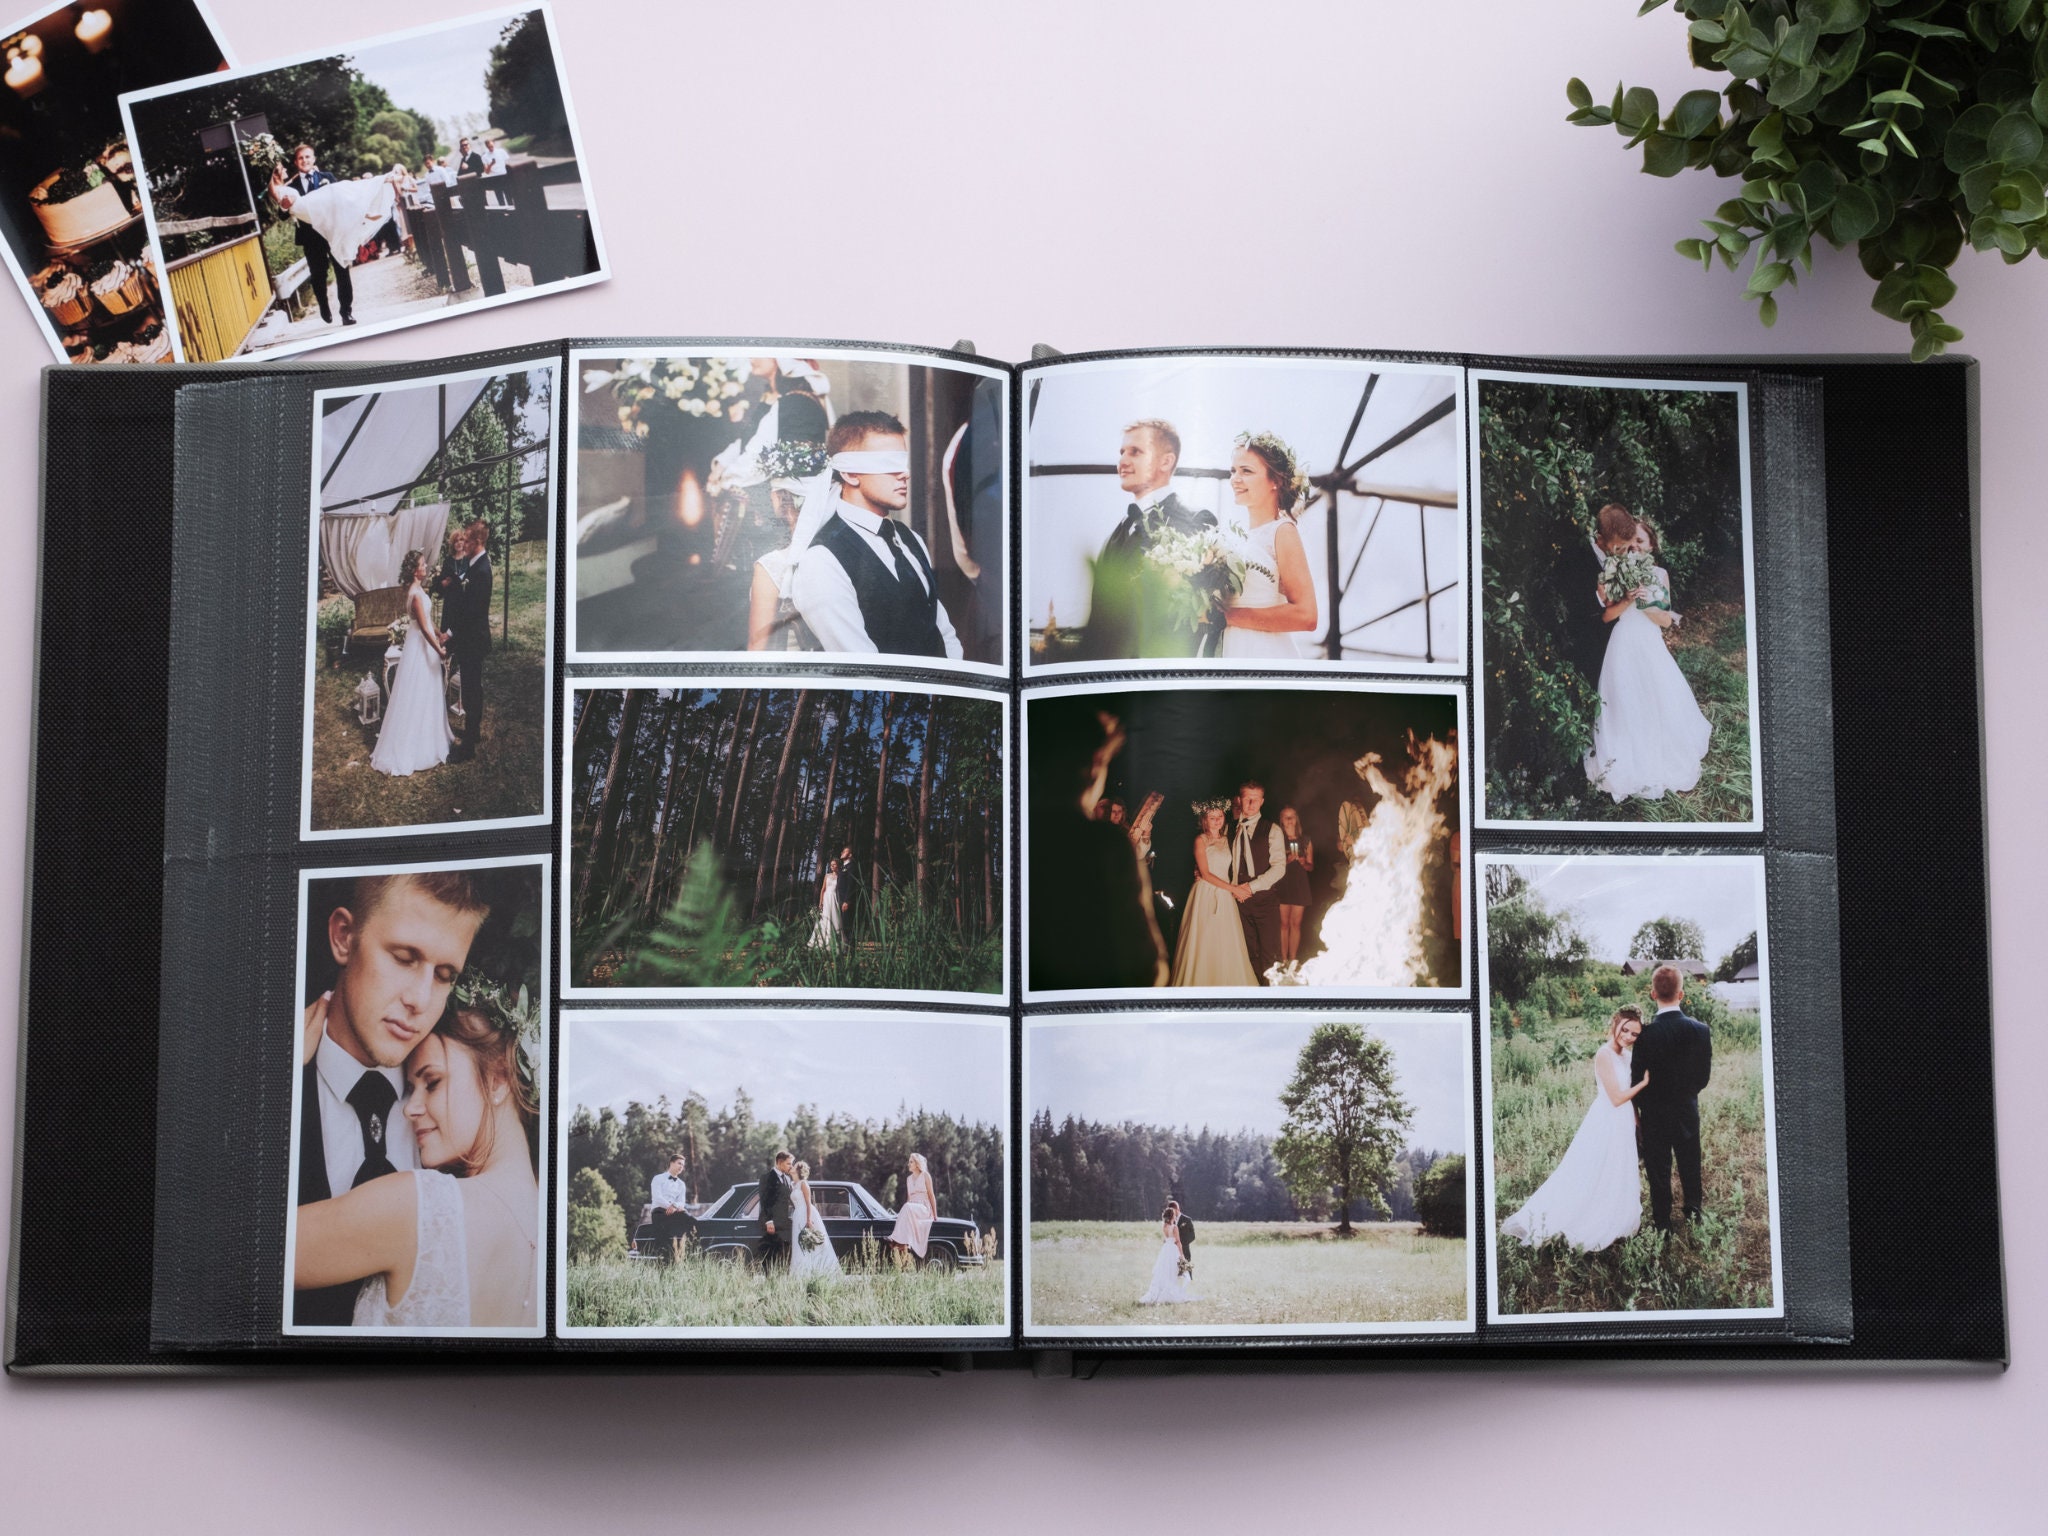 Personalized 4x6 Photo Album for 500 Photos. Large Wedding Photo